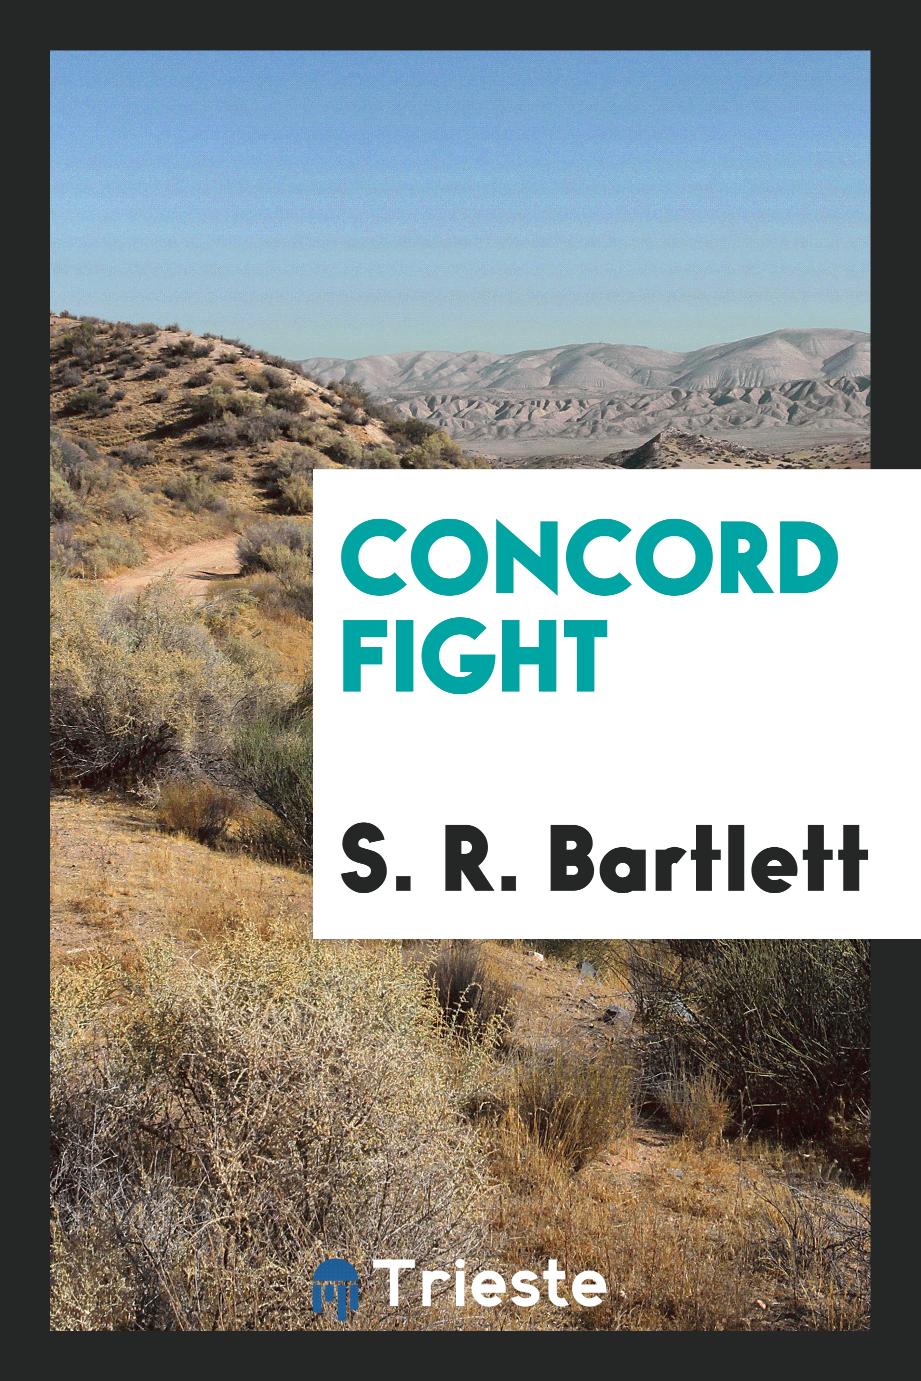 Concord fight